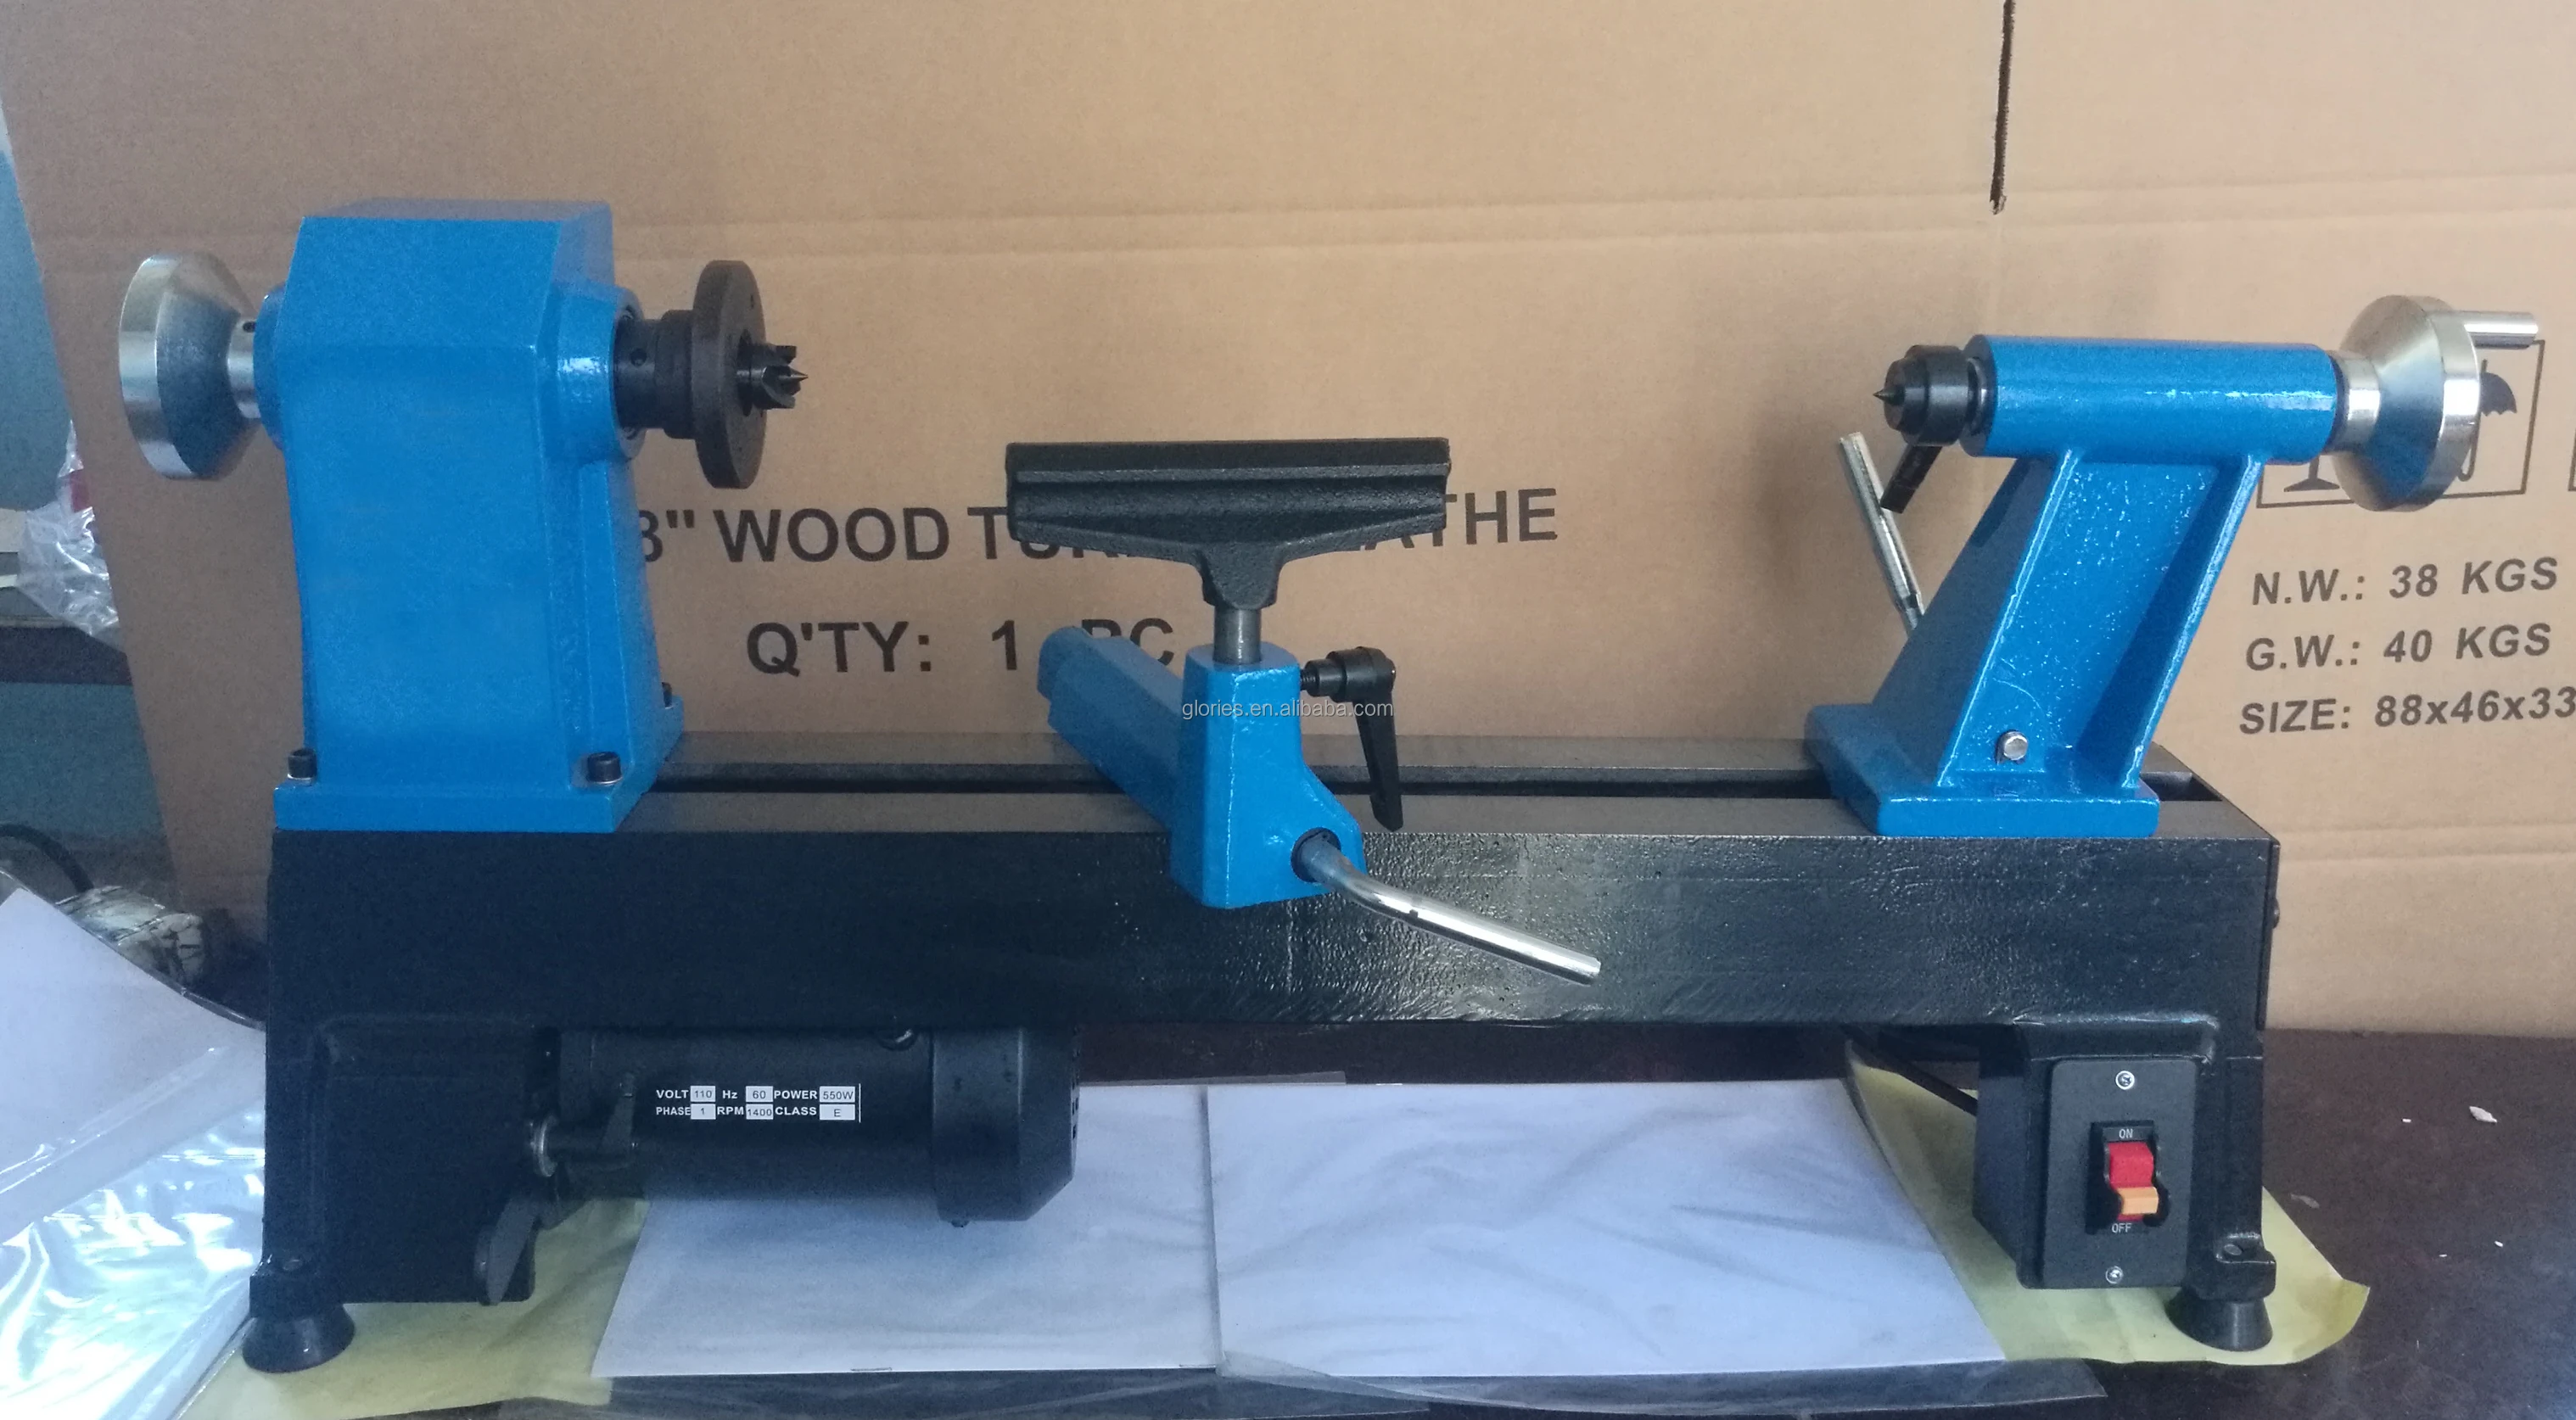 5 Speed Wood Lathe machine MC1018 for Wood Turning WL1018